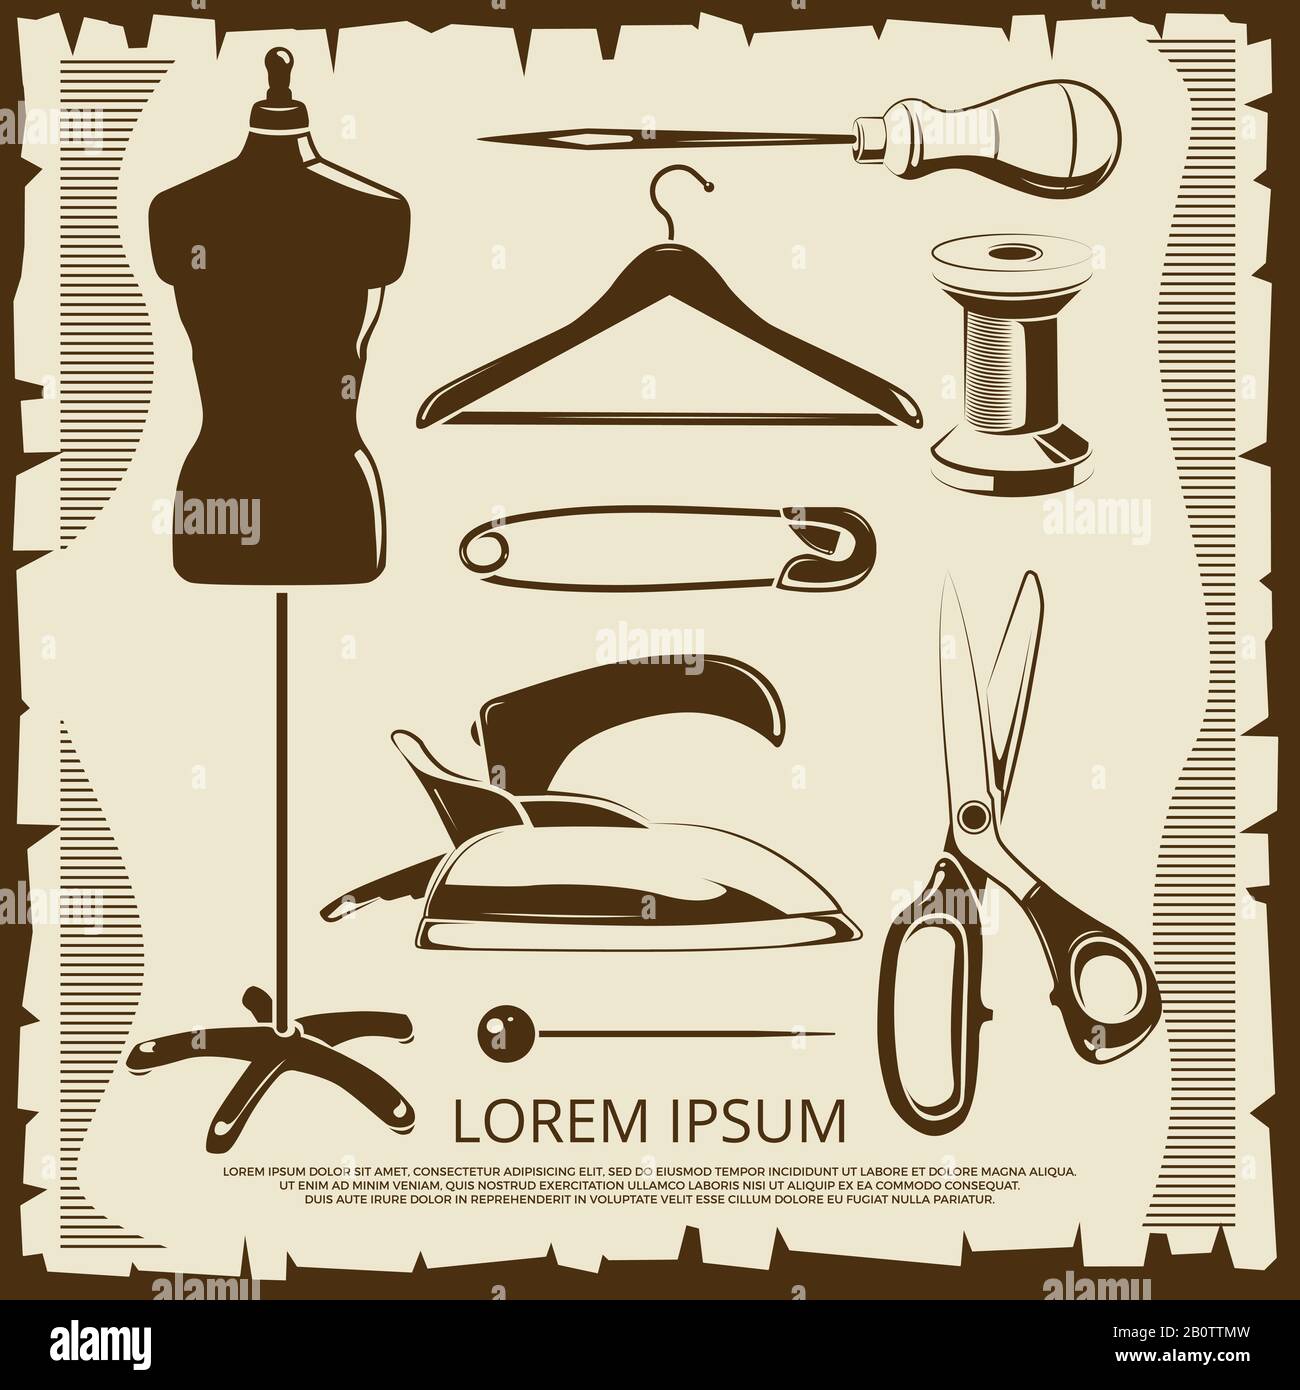 Elementi vintage per etichette su misura - forbici, ciuccio, filettatura, perni in stile retrò. Illustrazione del vettore Illustrazione Vettoriale